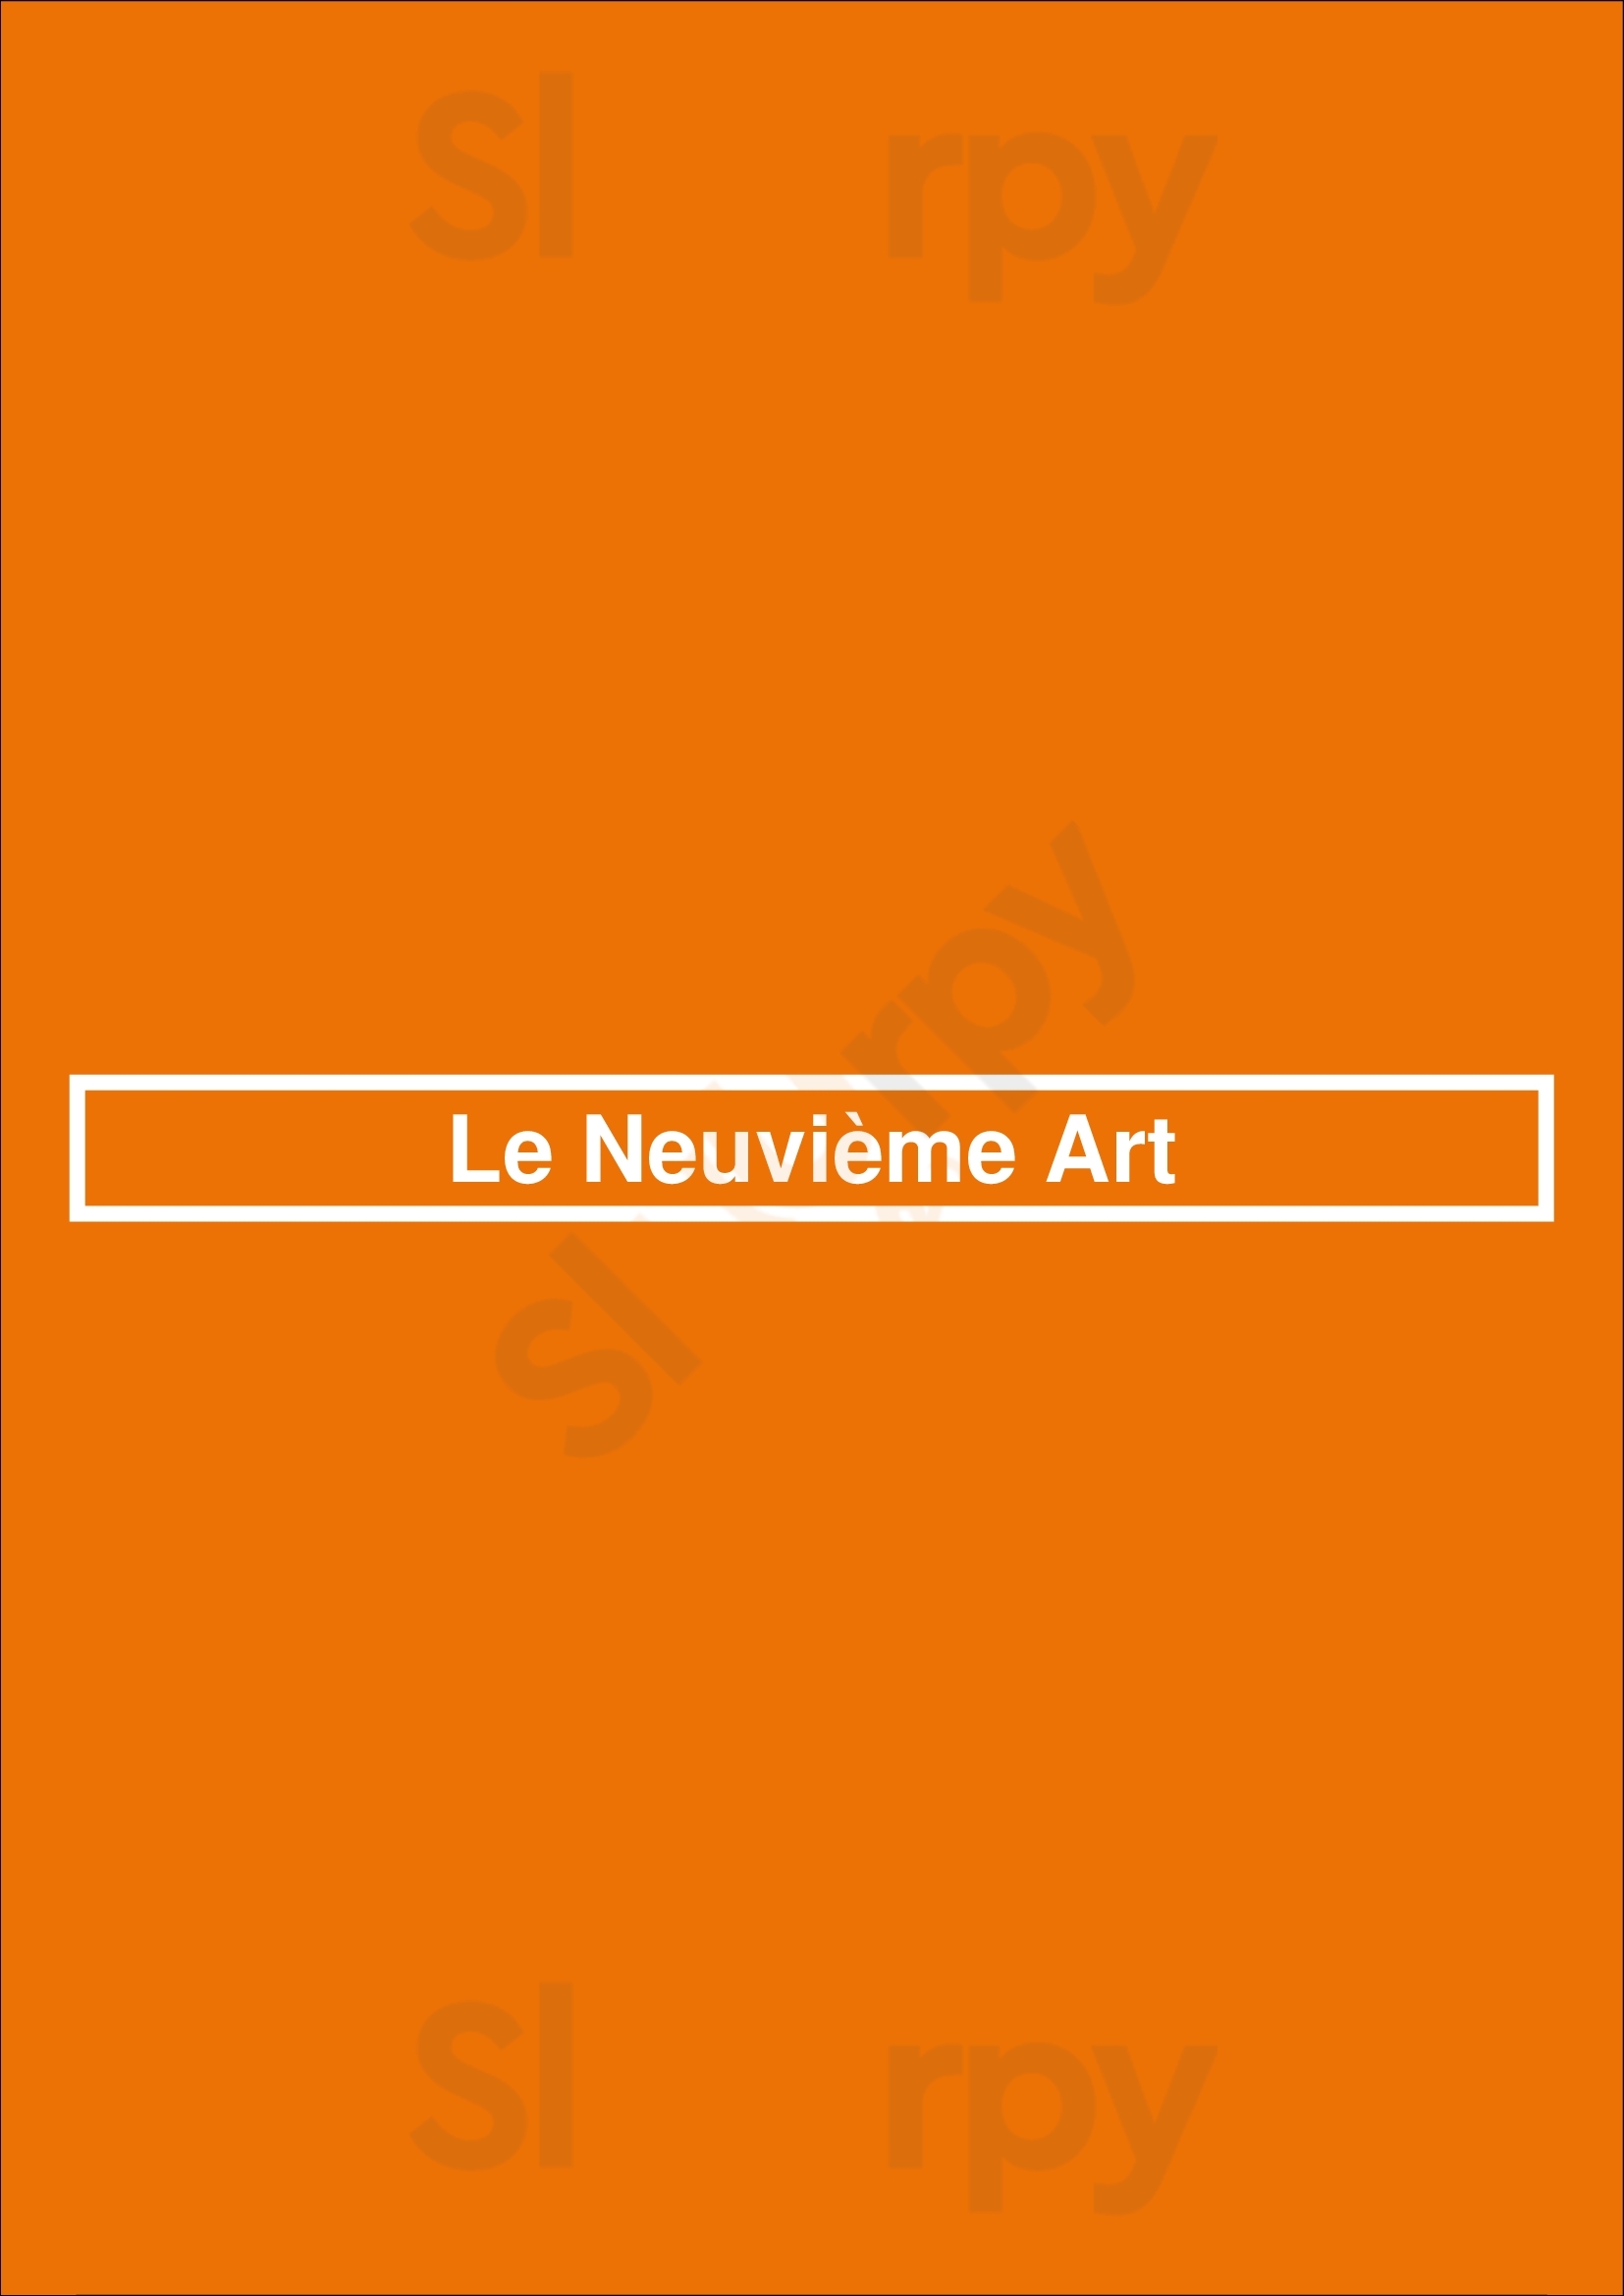 Le Neuvième Art Lyon Menu - 1